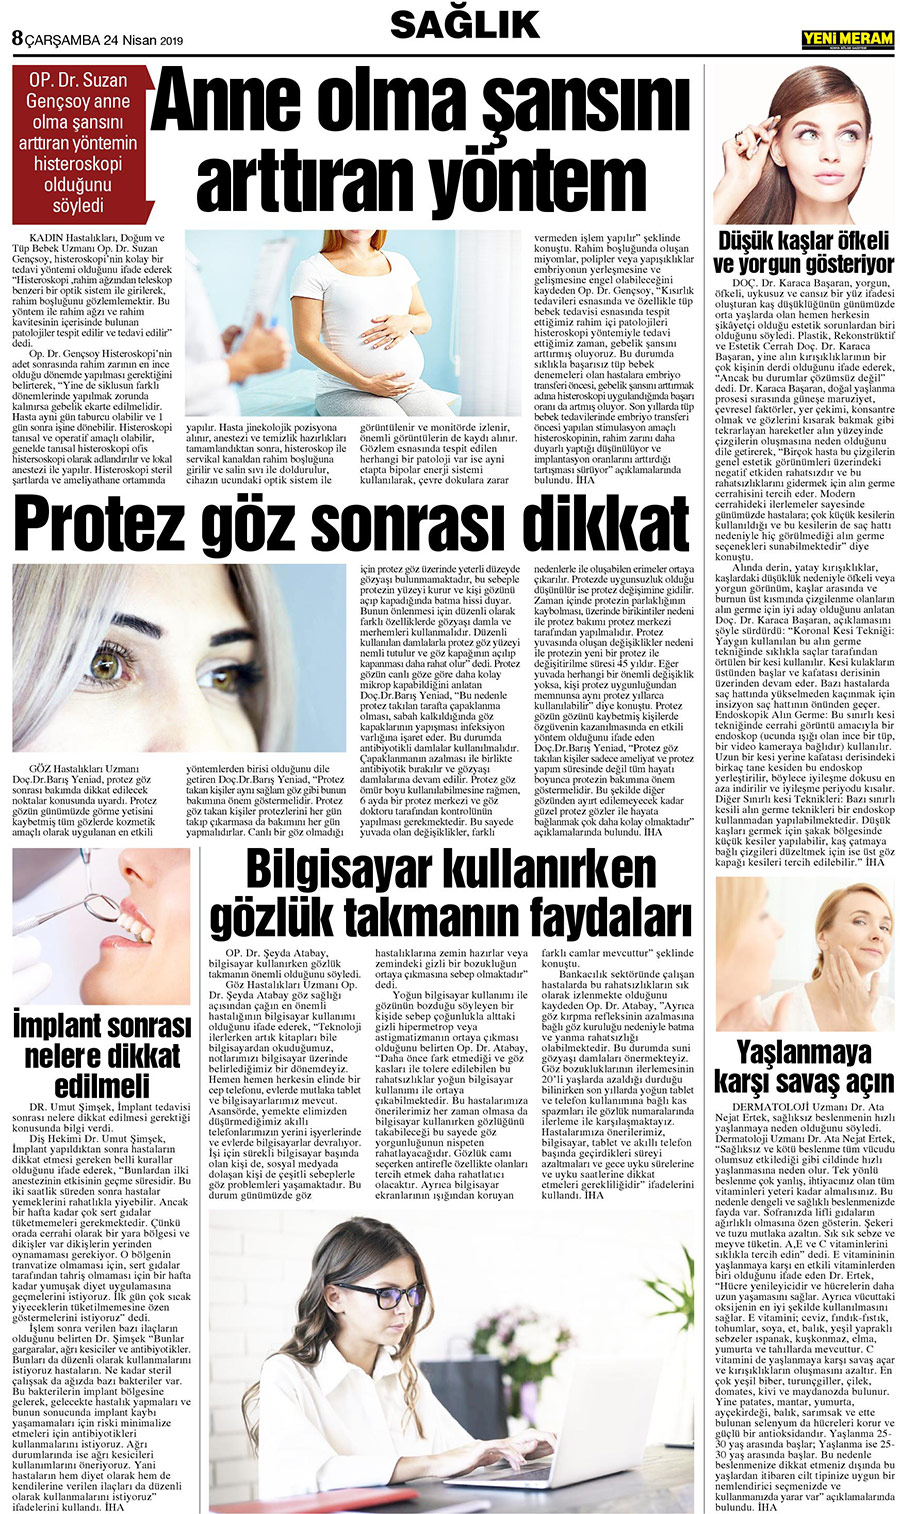 24 Nisan 2019 Yeni Meram Gazetesi